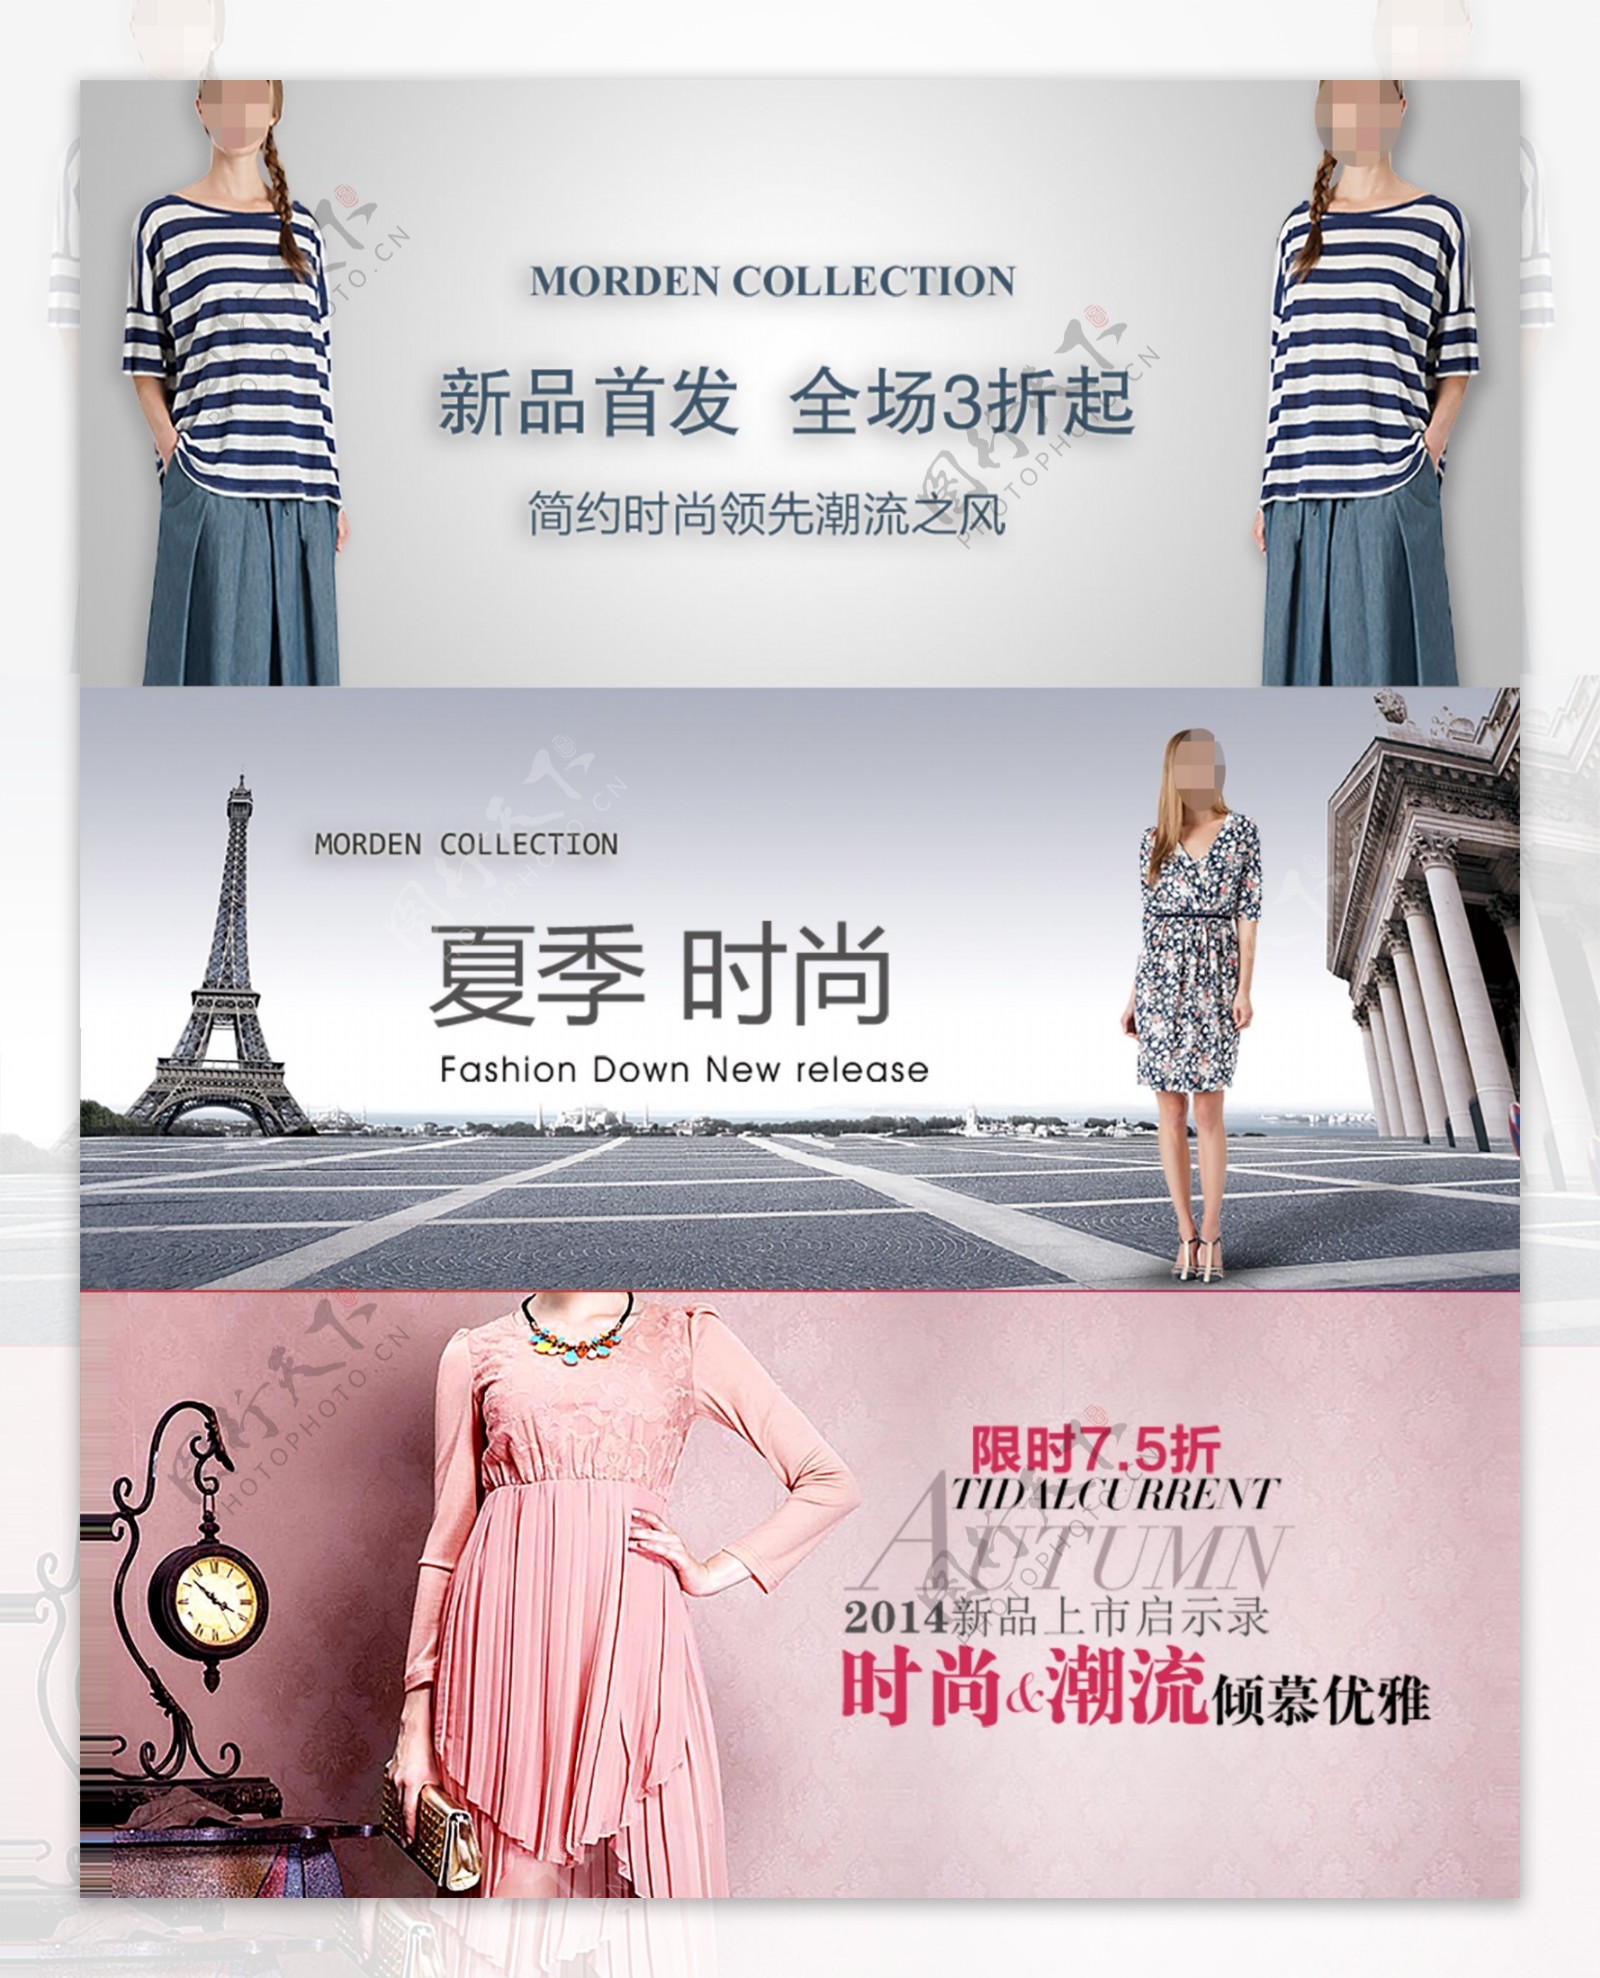 清新初夏上新女装美妆新品上市活动促销海报